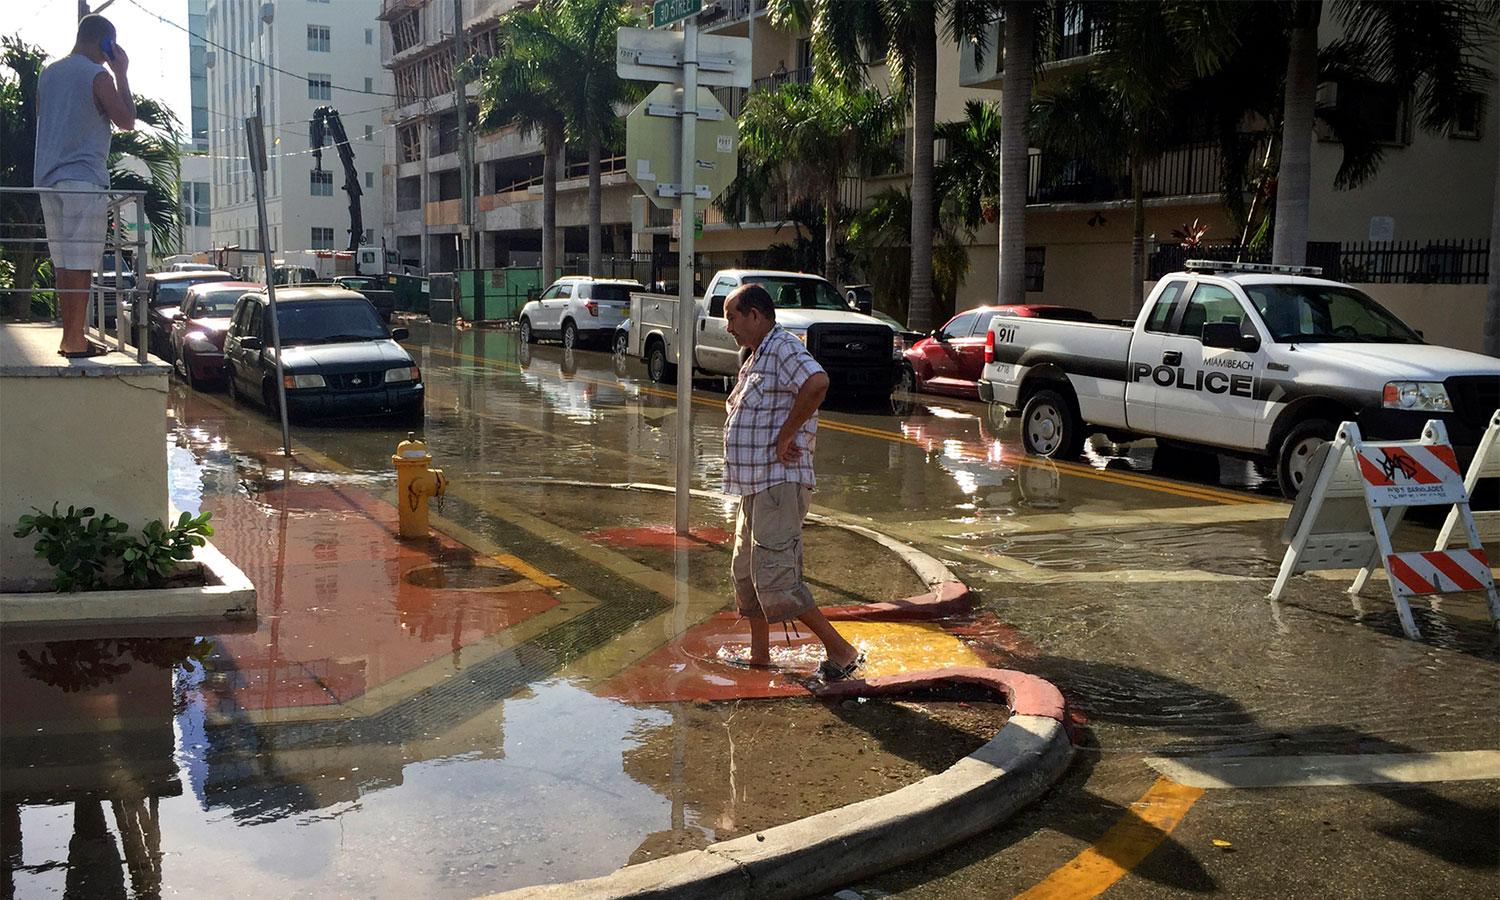 Man walks through water on flooded Miami street.